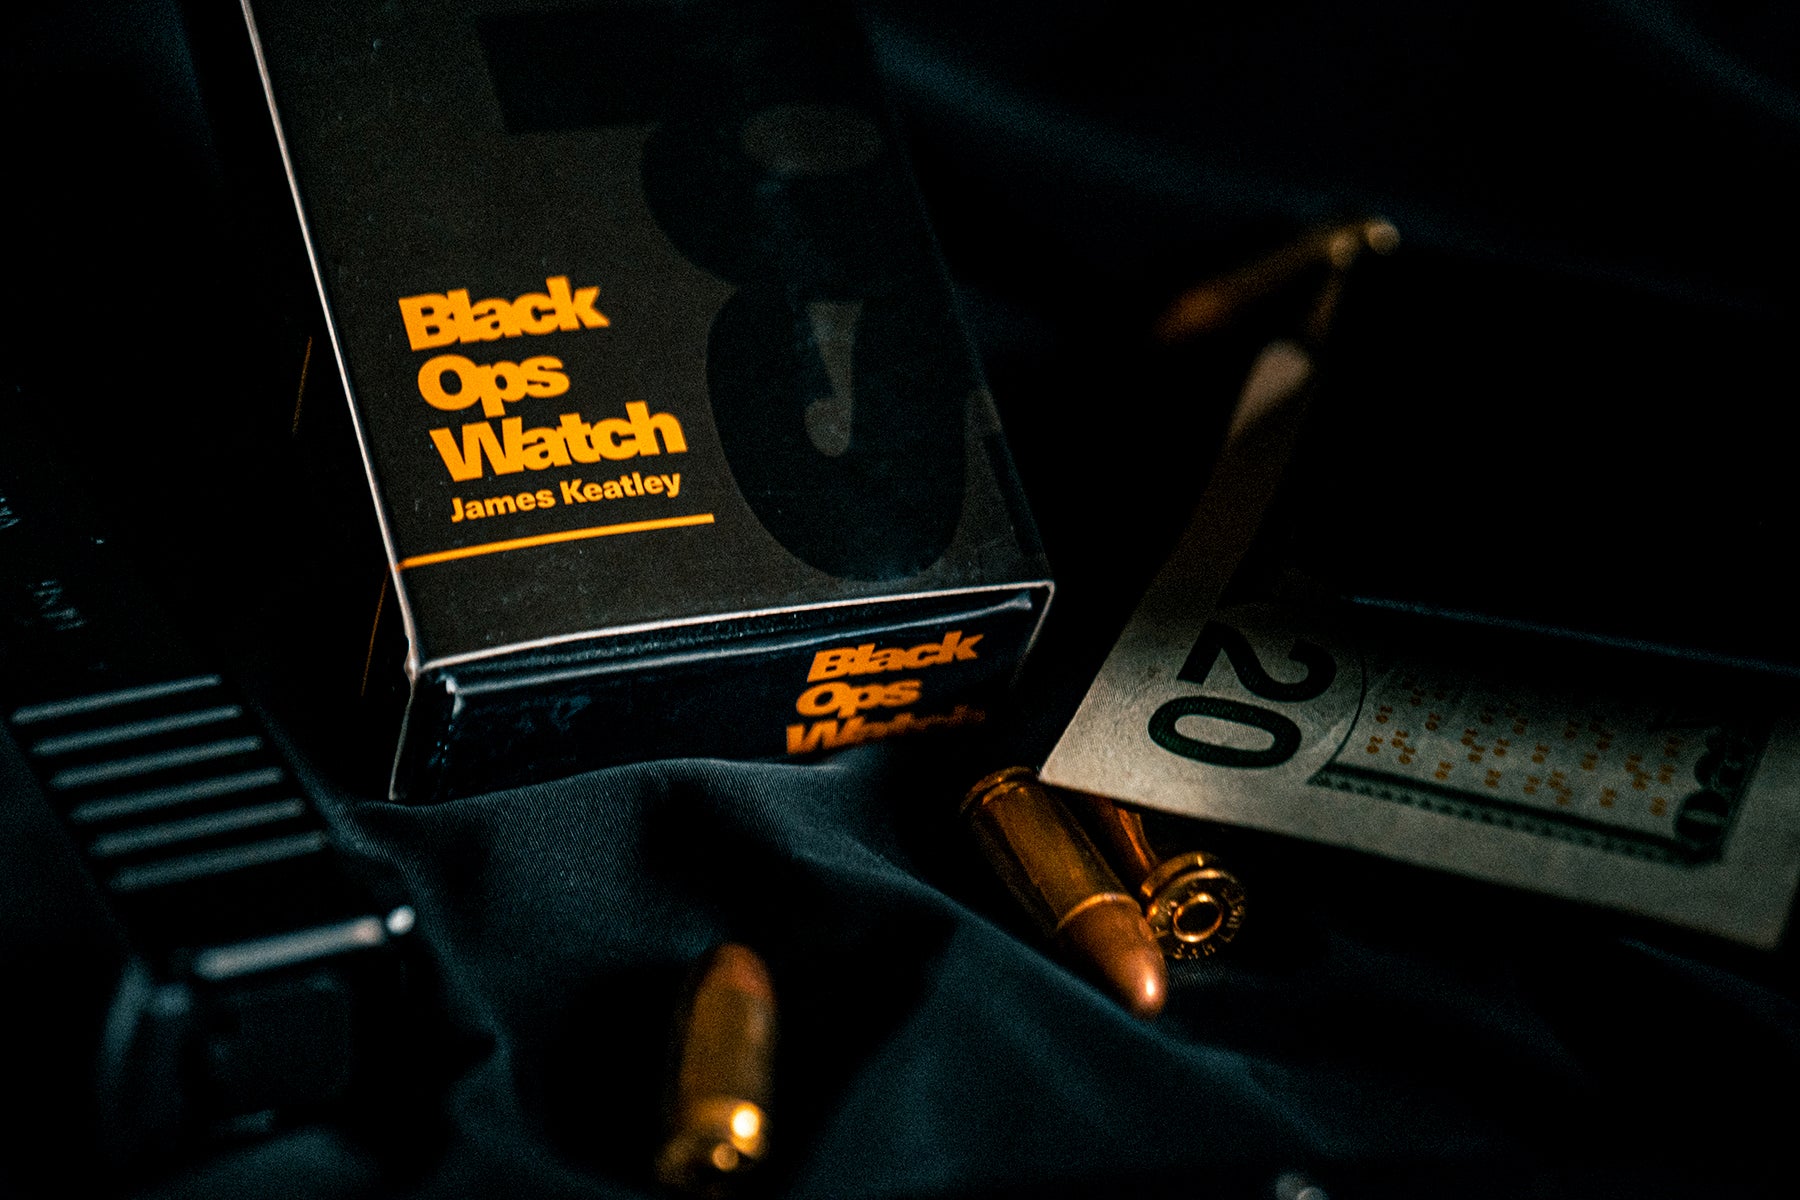 Black Ops Watch by James Keatley | Ellusionist